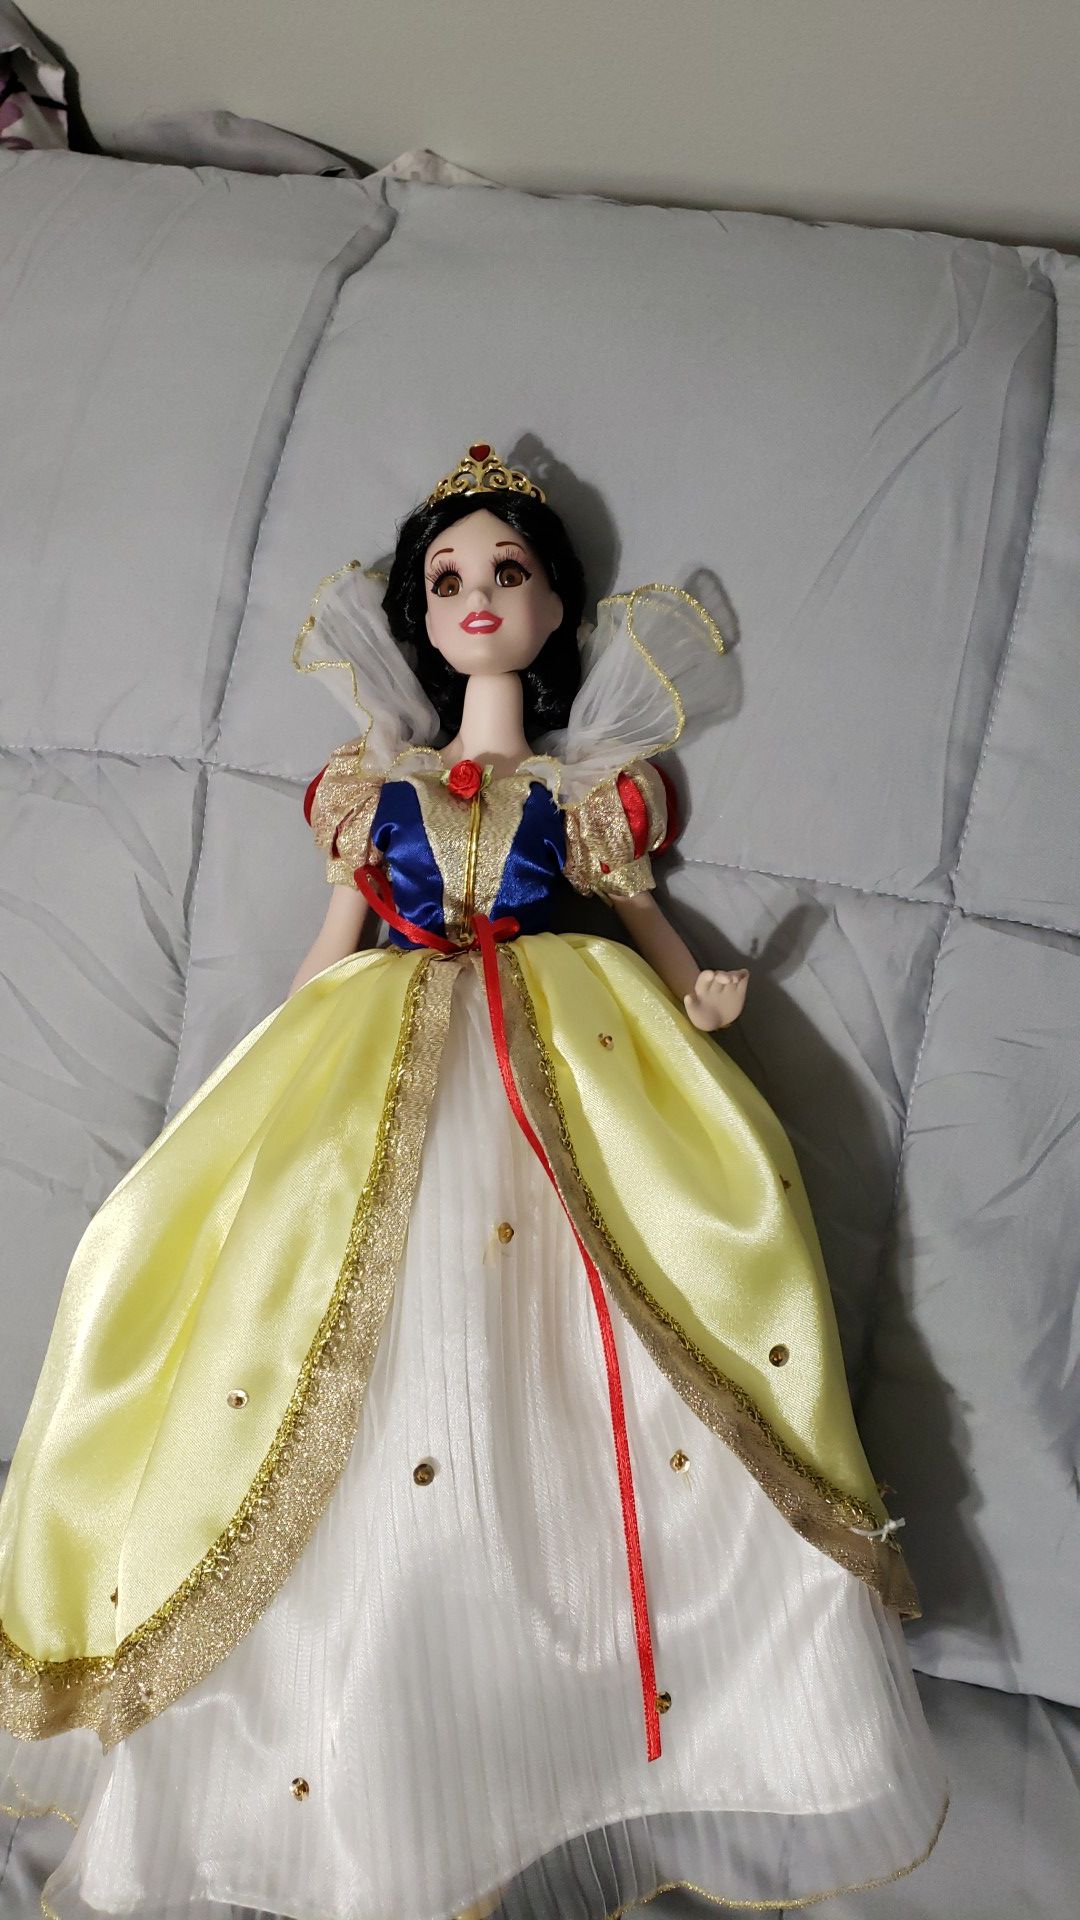 Snow White porcelain doll